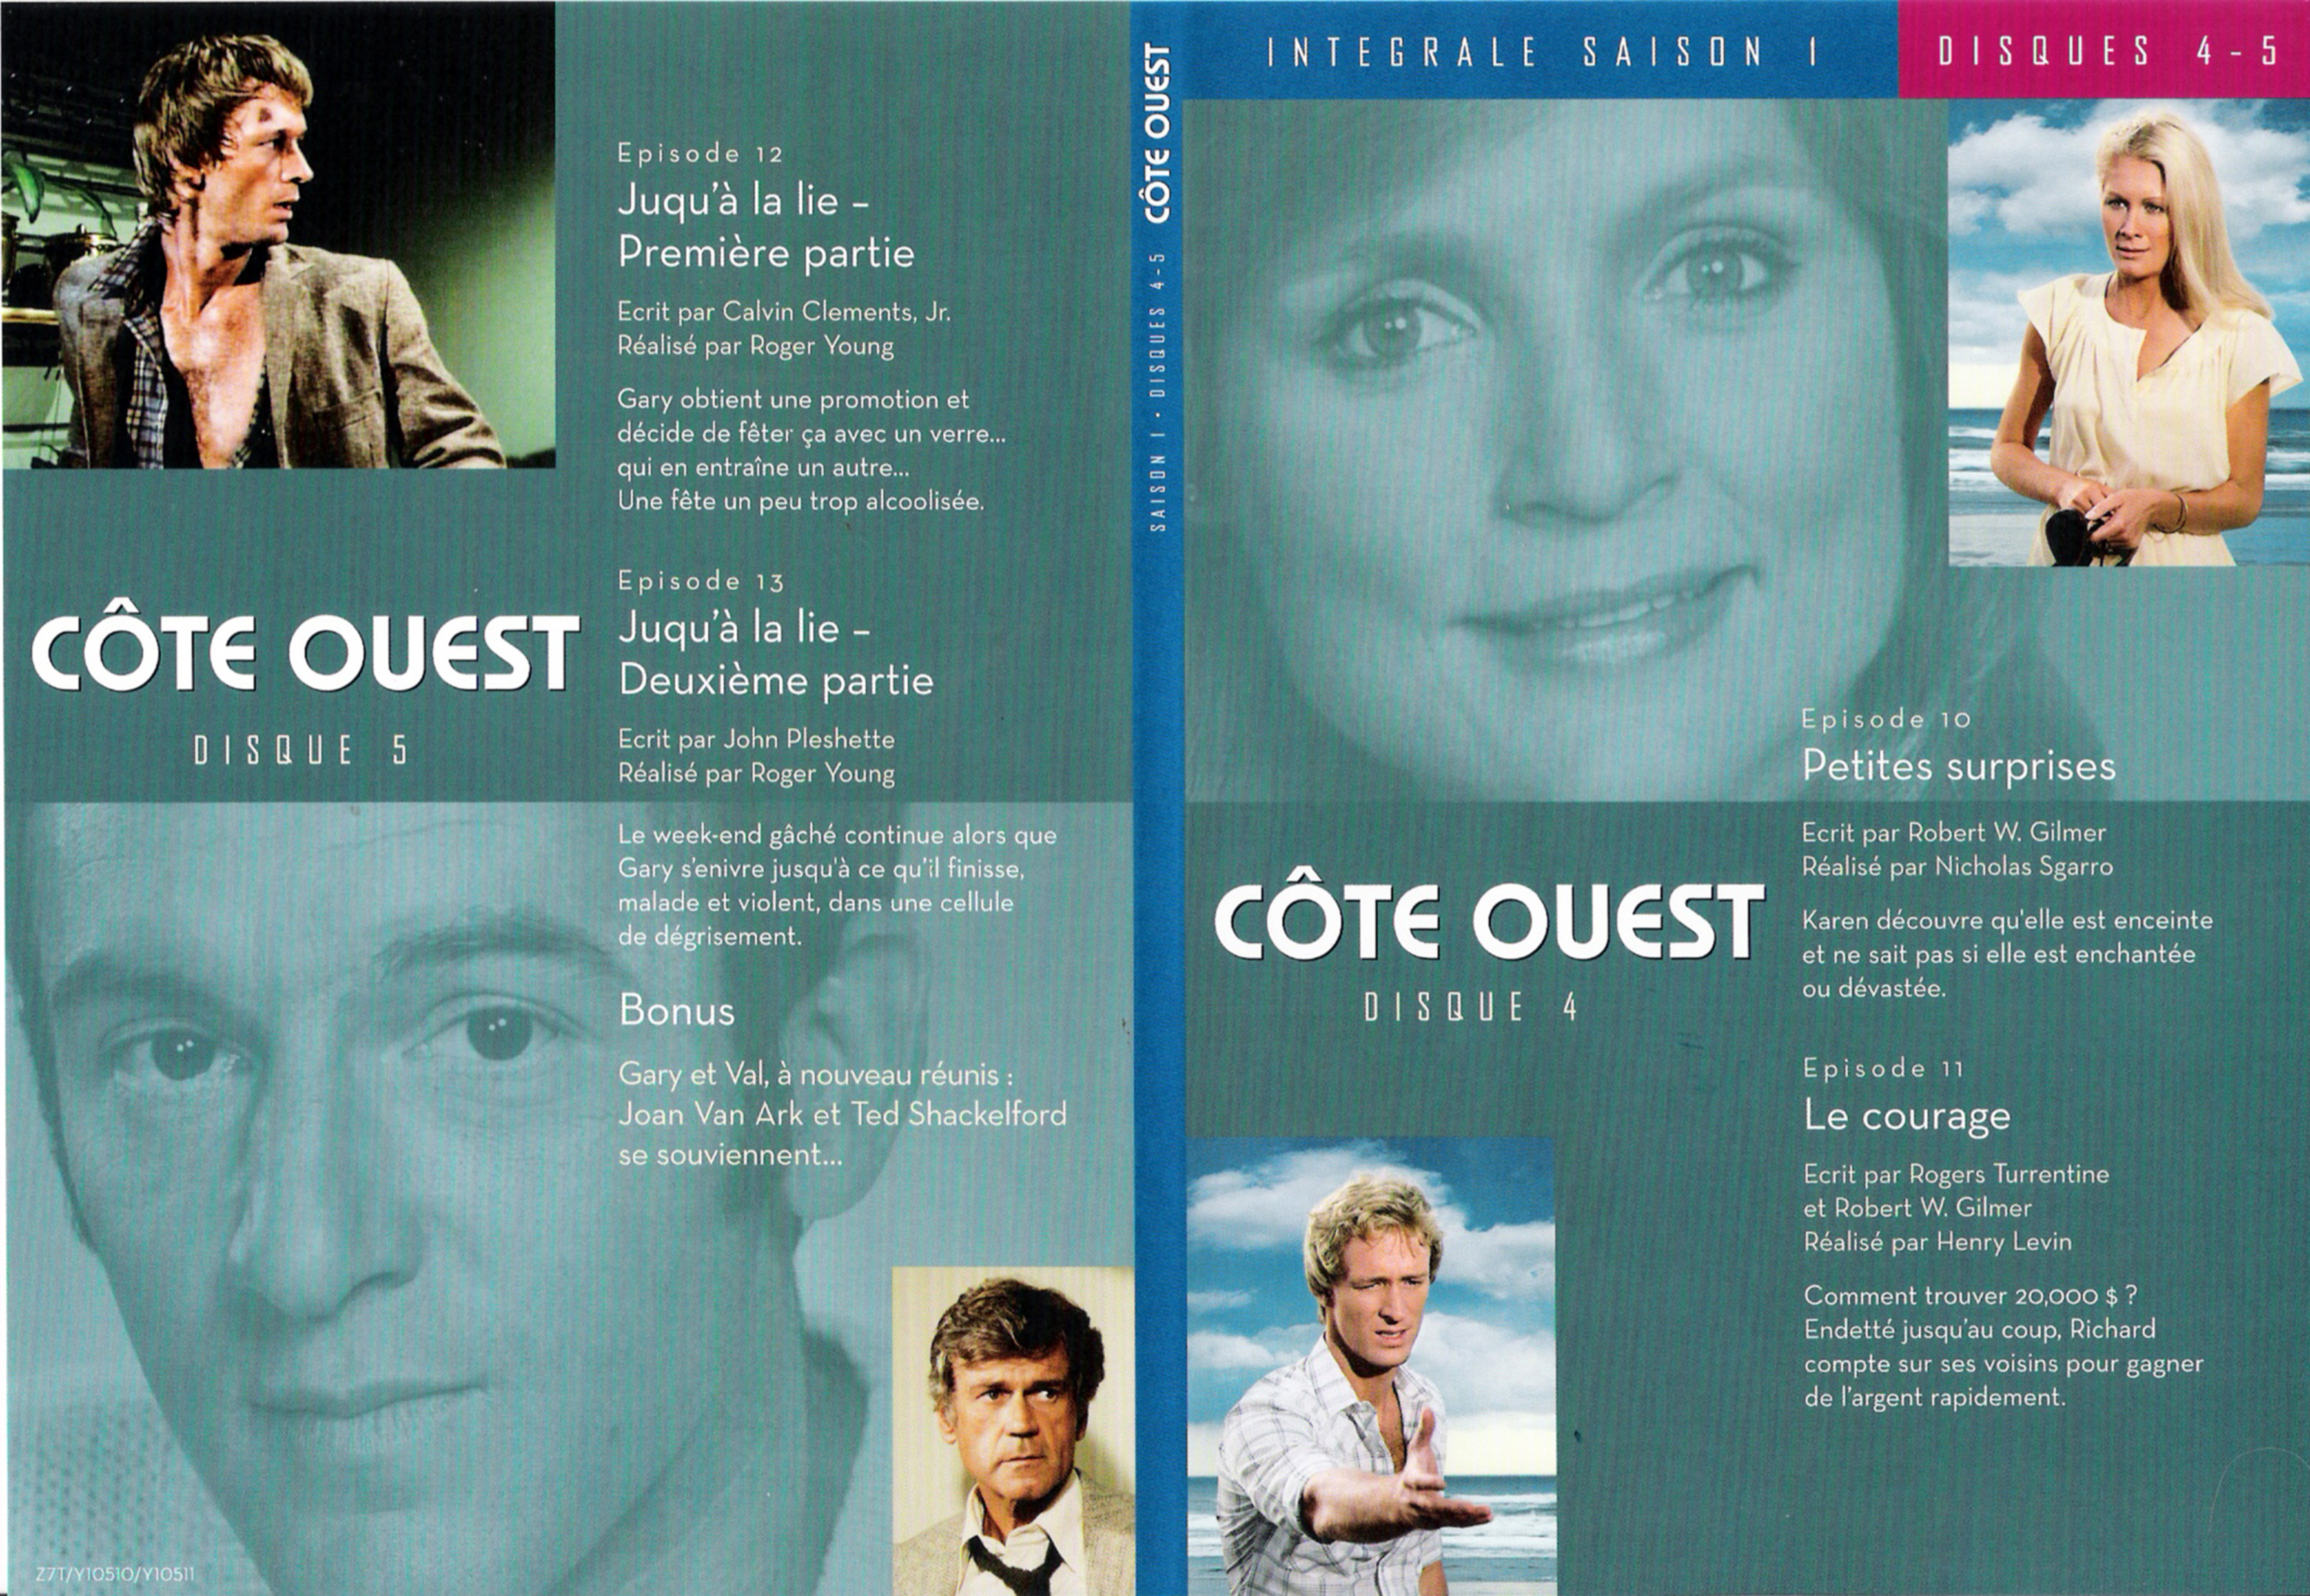 Jaquette DVD Cte Ouest Saison 1 DVD 4 & 5